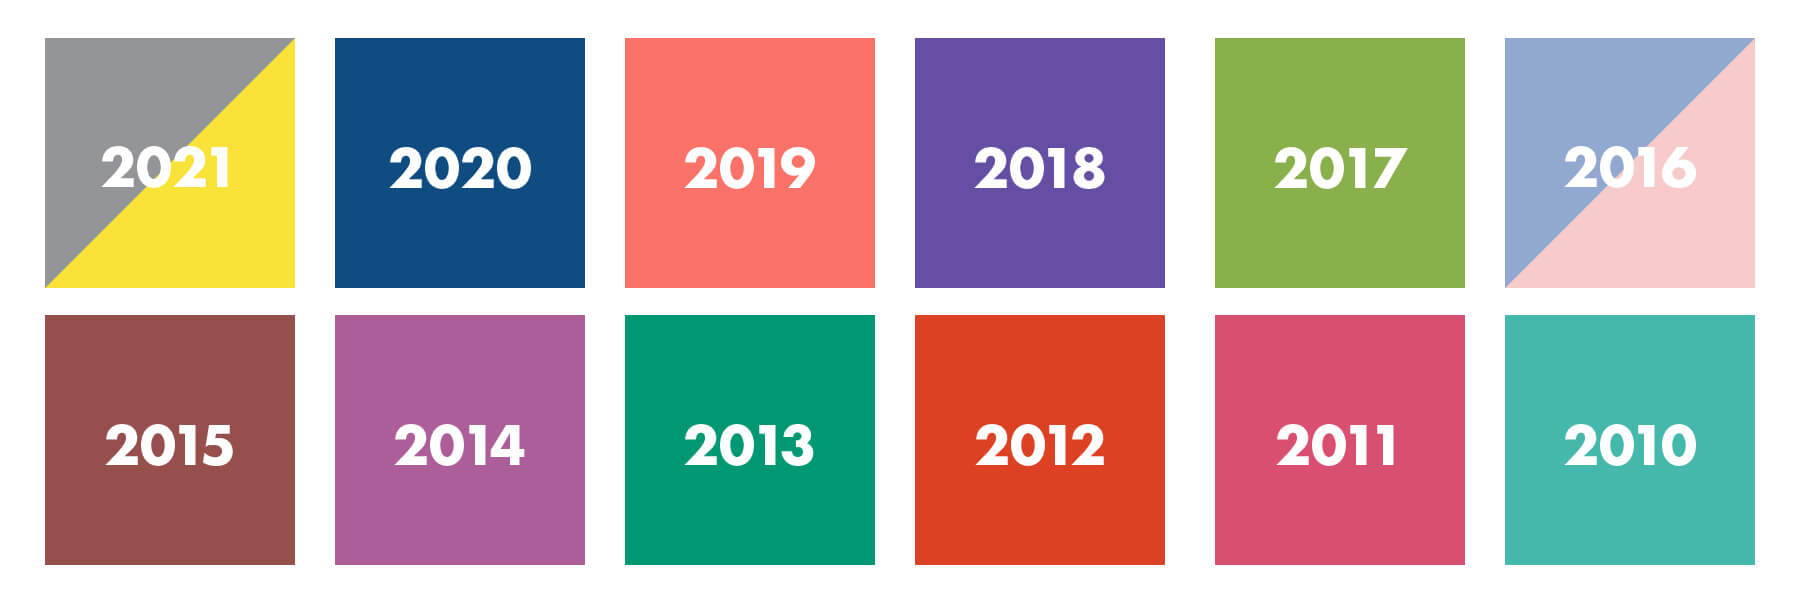 Past Pantone Colors 2010-2021